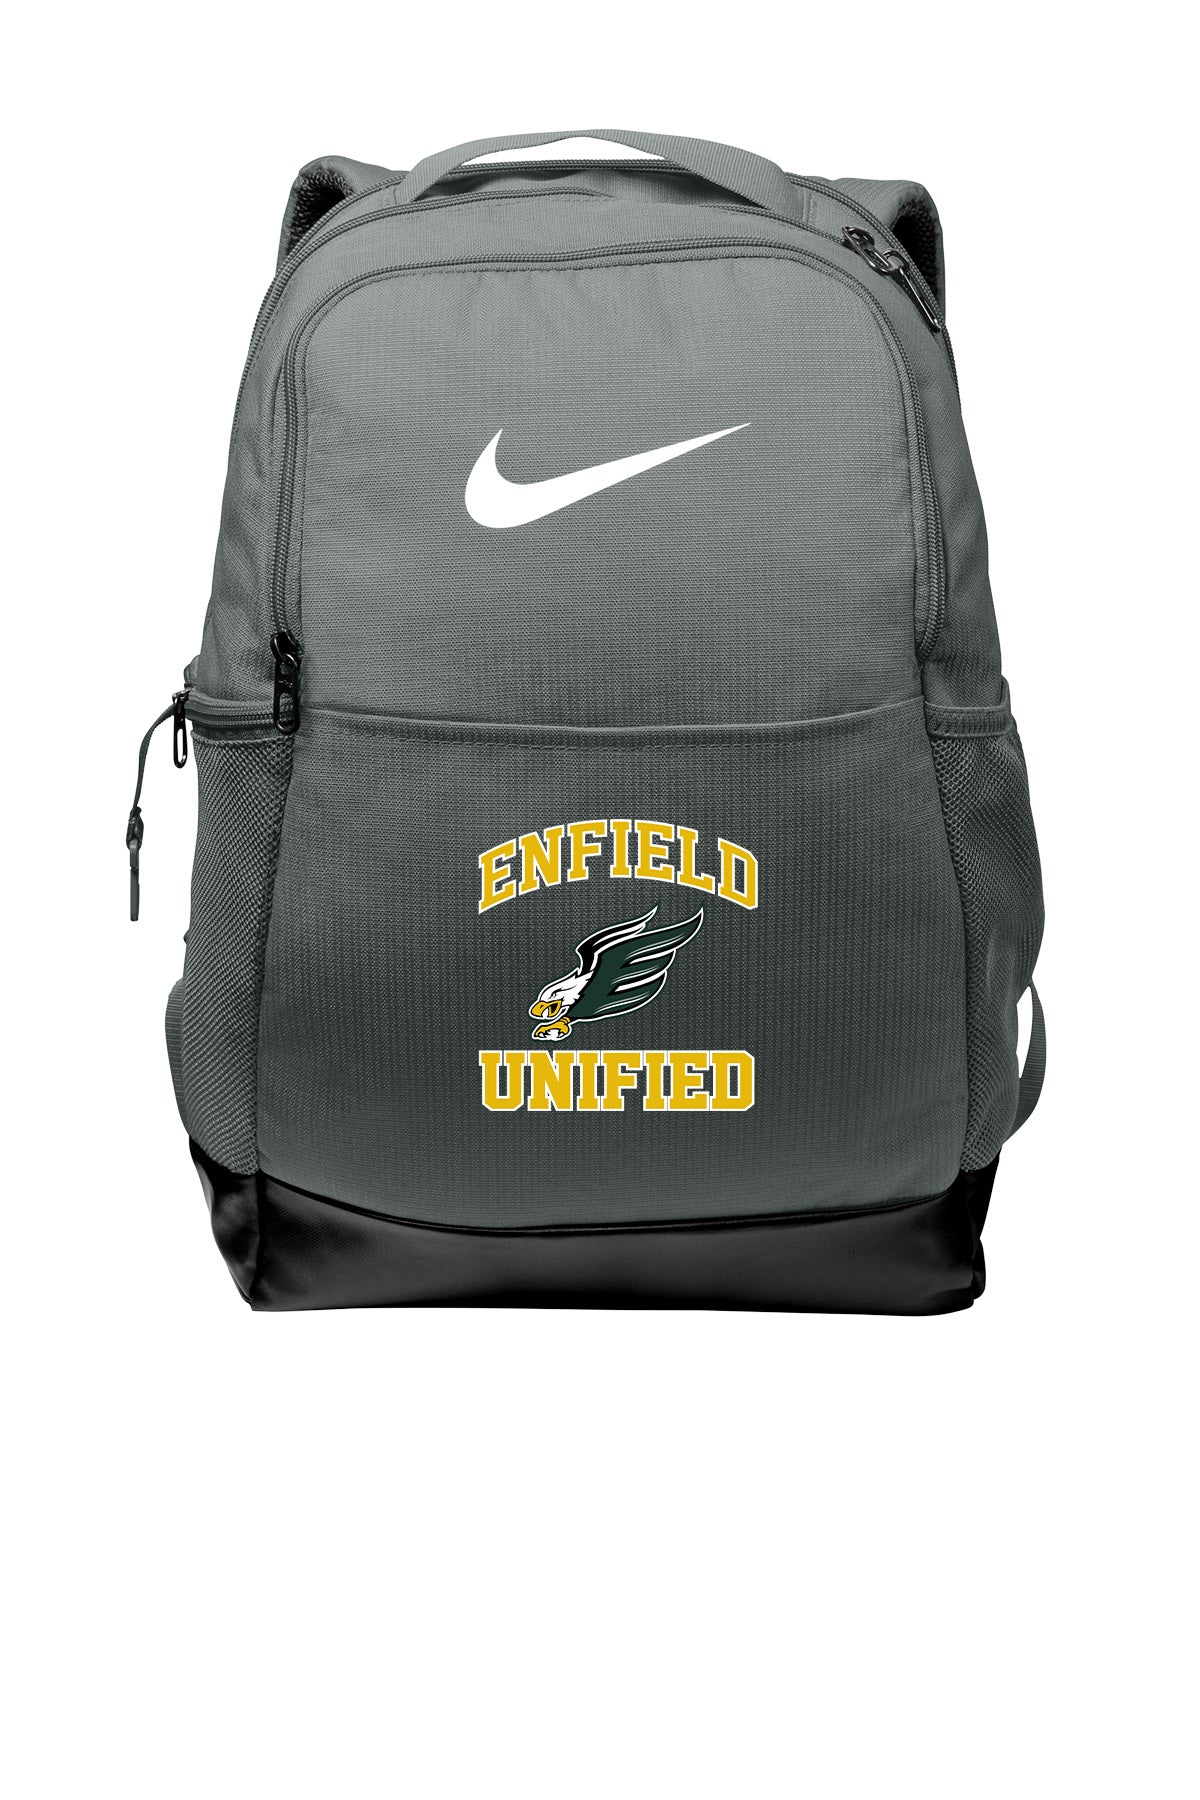 Unified Nike Backpack - NKDH7709